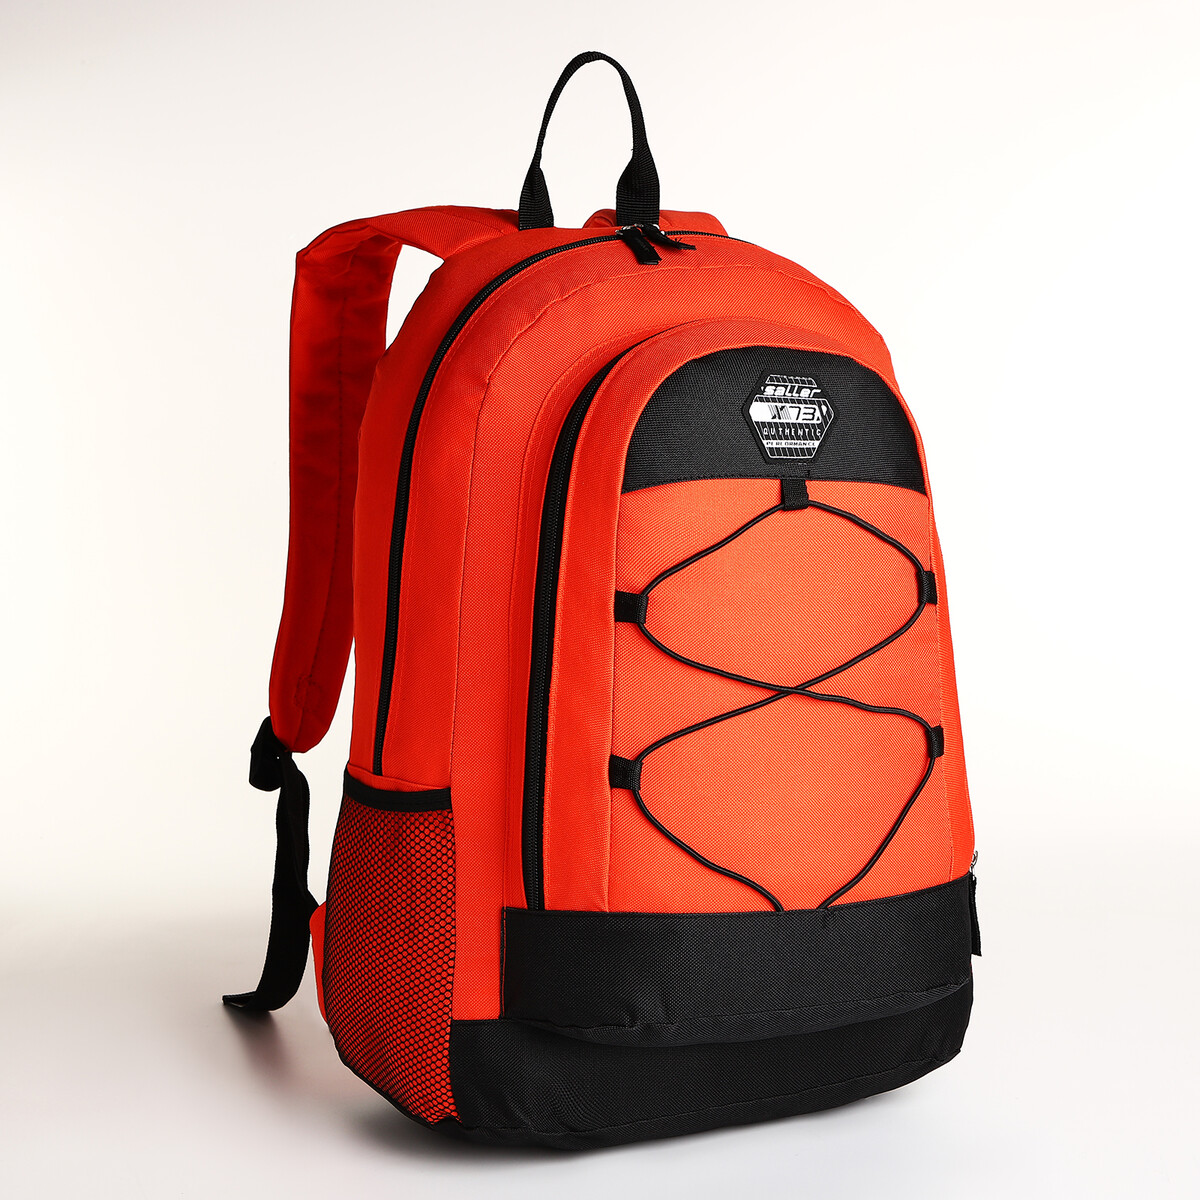 Рюкзак молодежный на молнии, 3 кармана, цвет оранжевый рюкзак 31 45 15 см отд на молнии 4 н кармана оранжевый